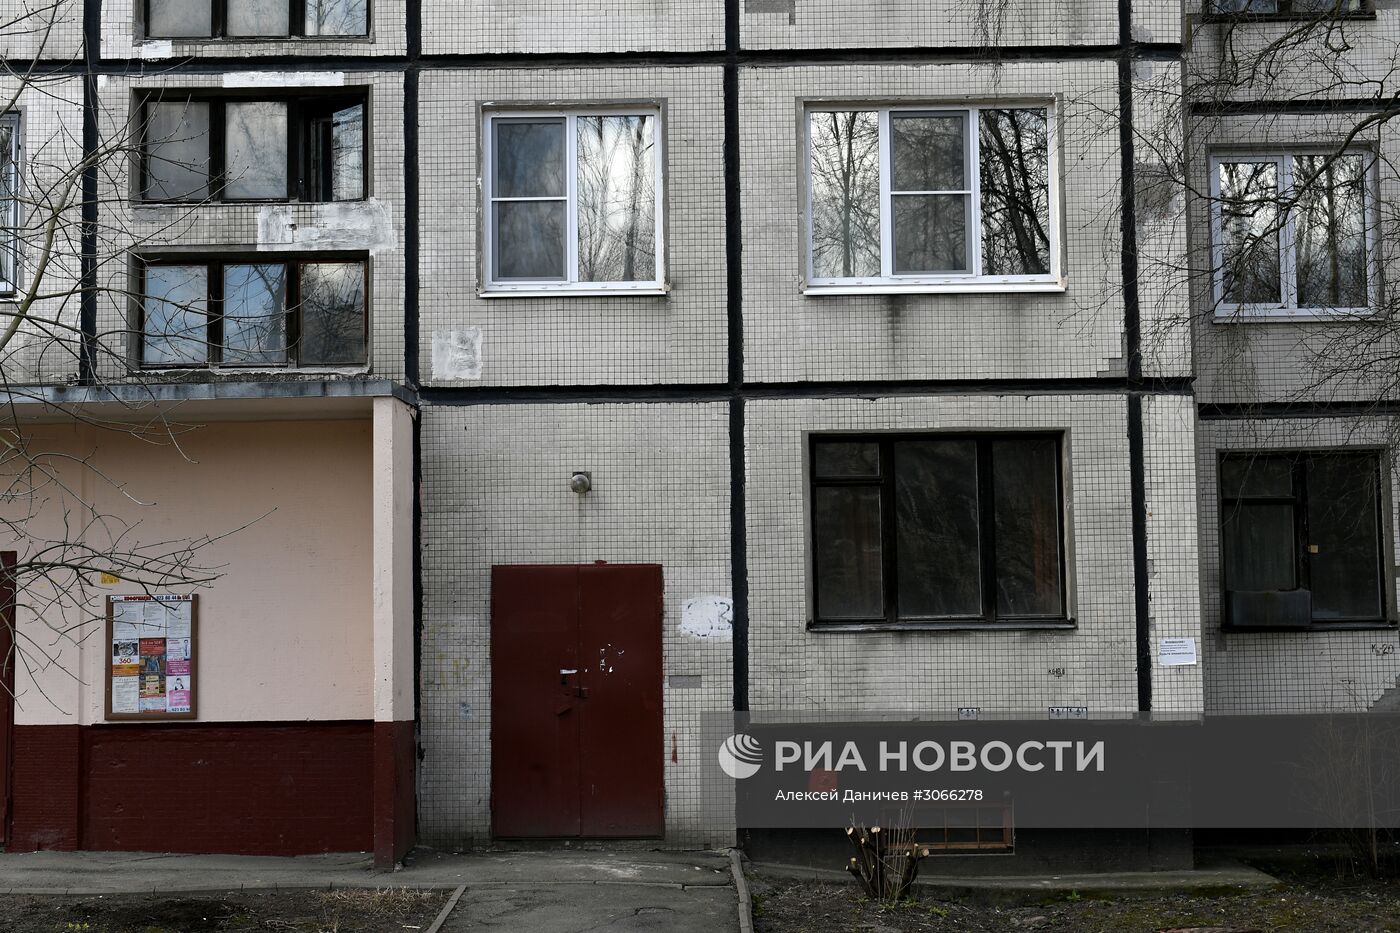 Дом, в котором жил вероятный исполнитель теракта Акбаржон Джалилов